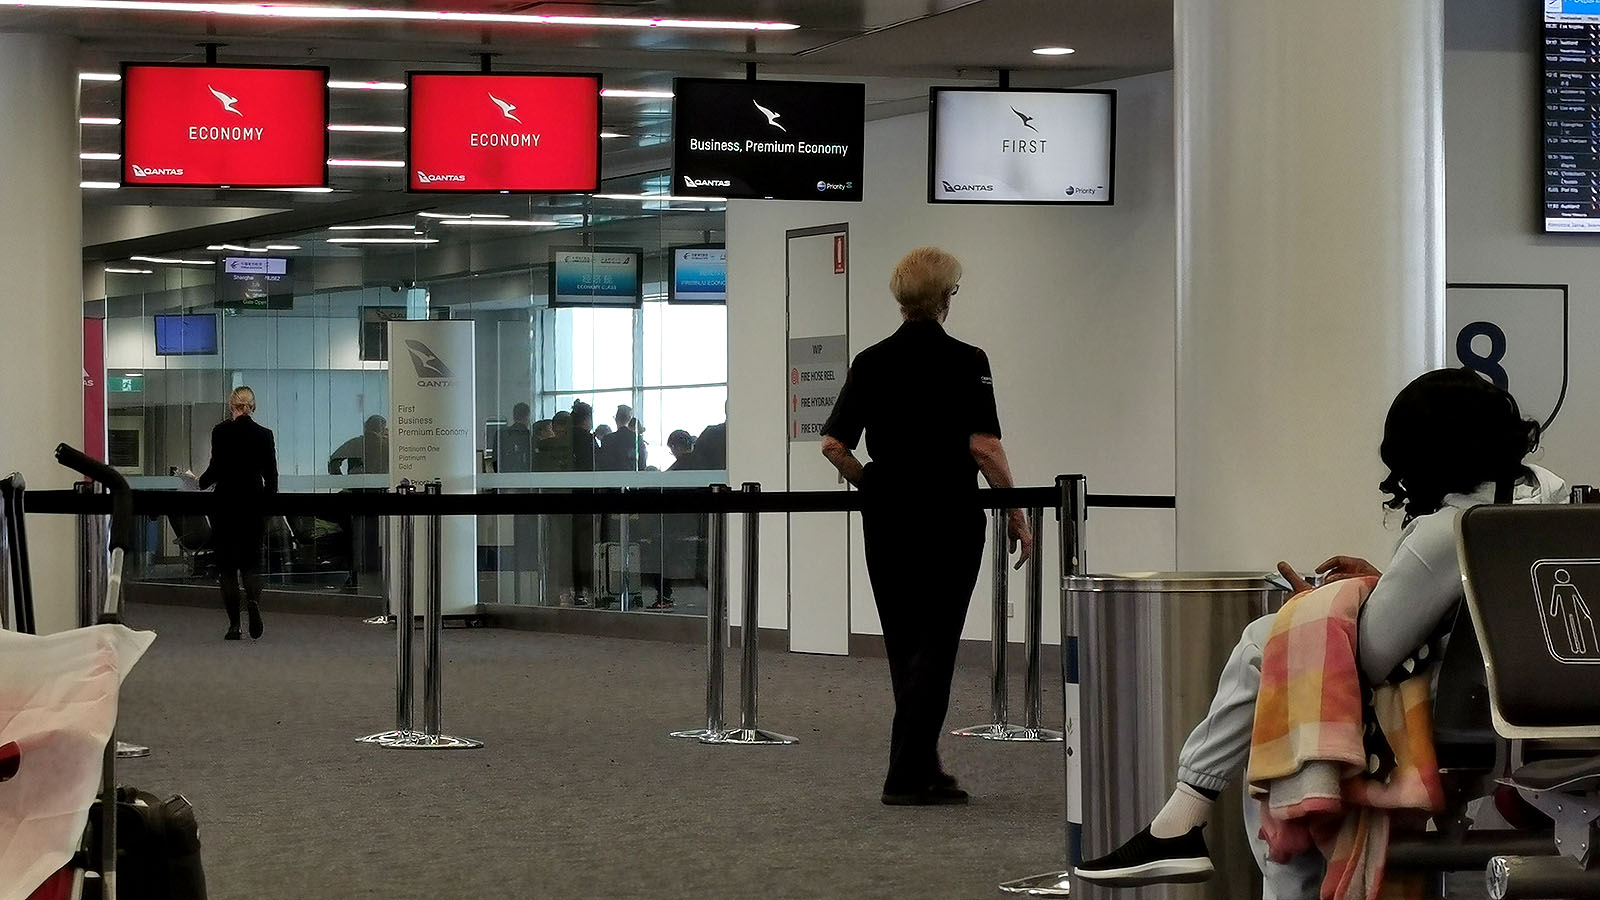 Qantas priority boarding